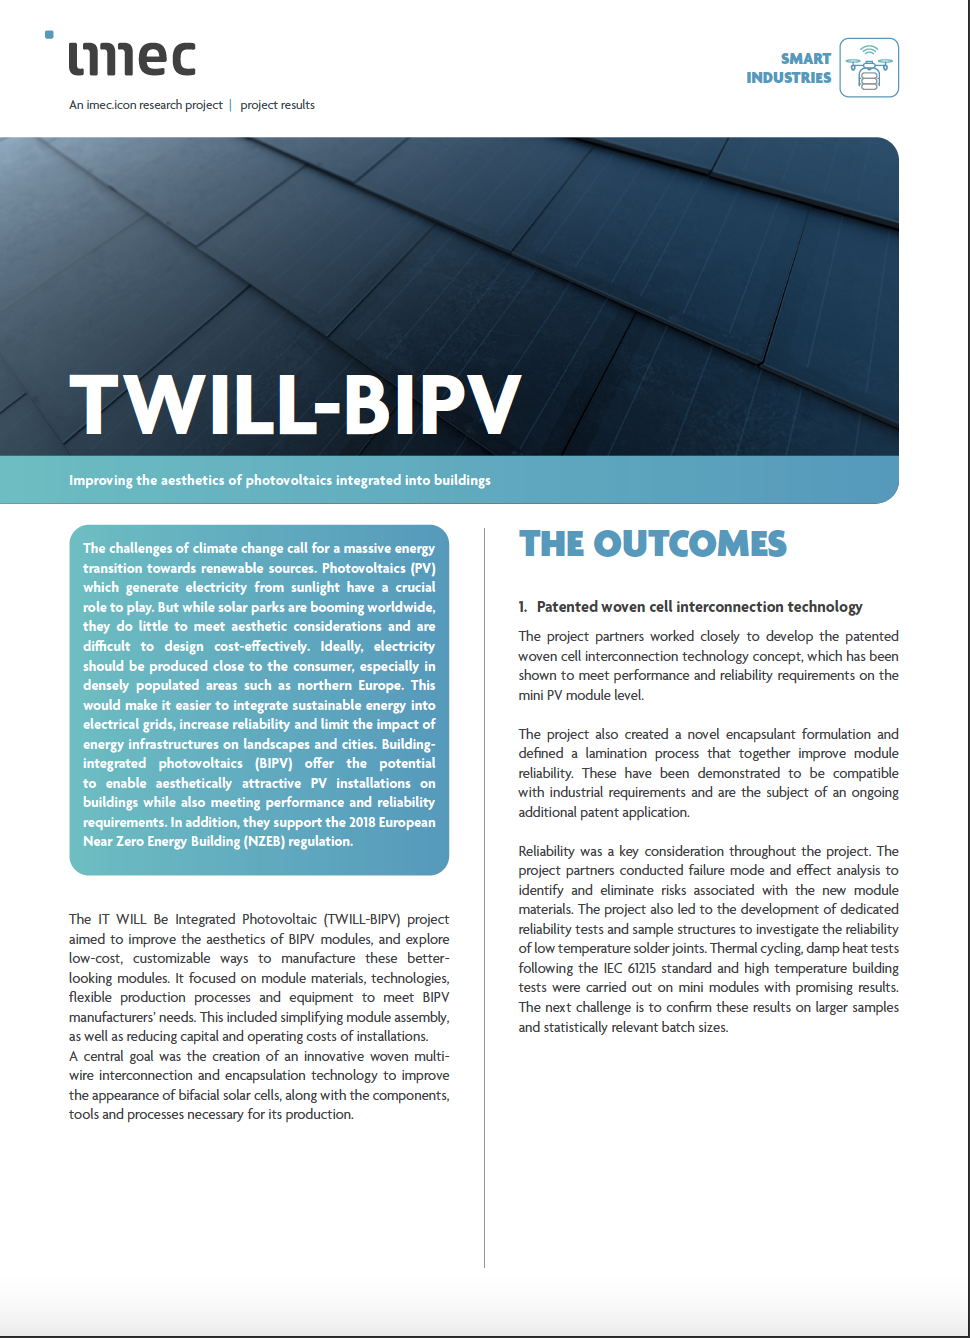 TWILL-BIPV leaflet